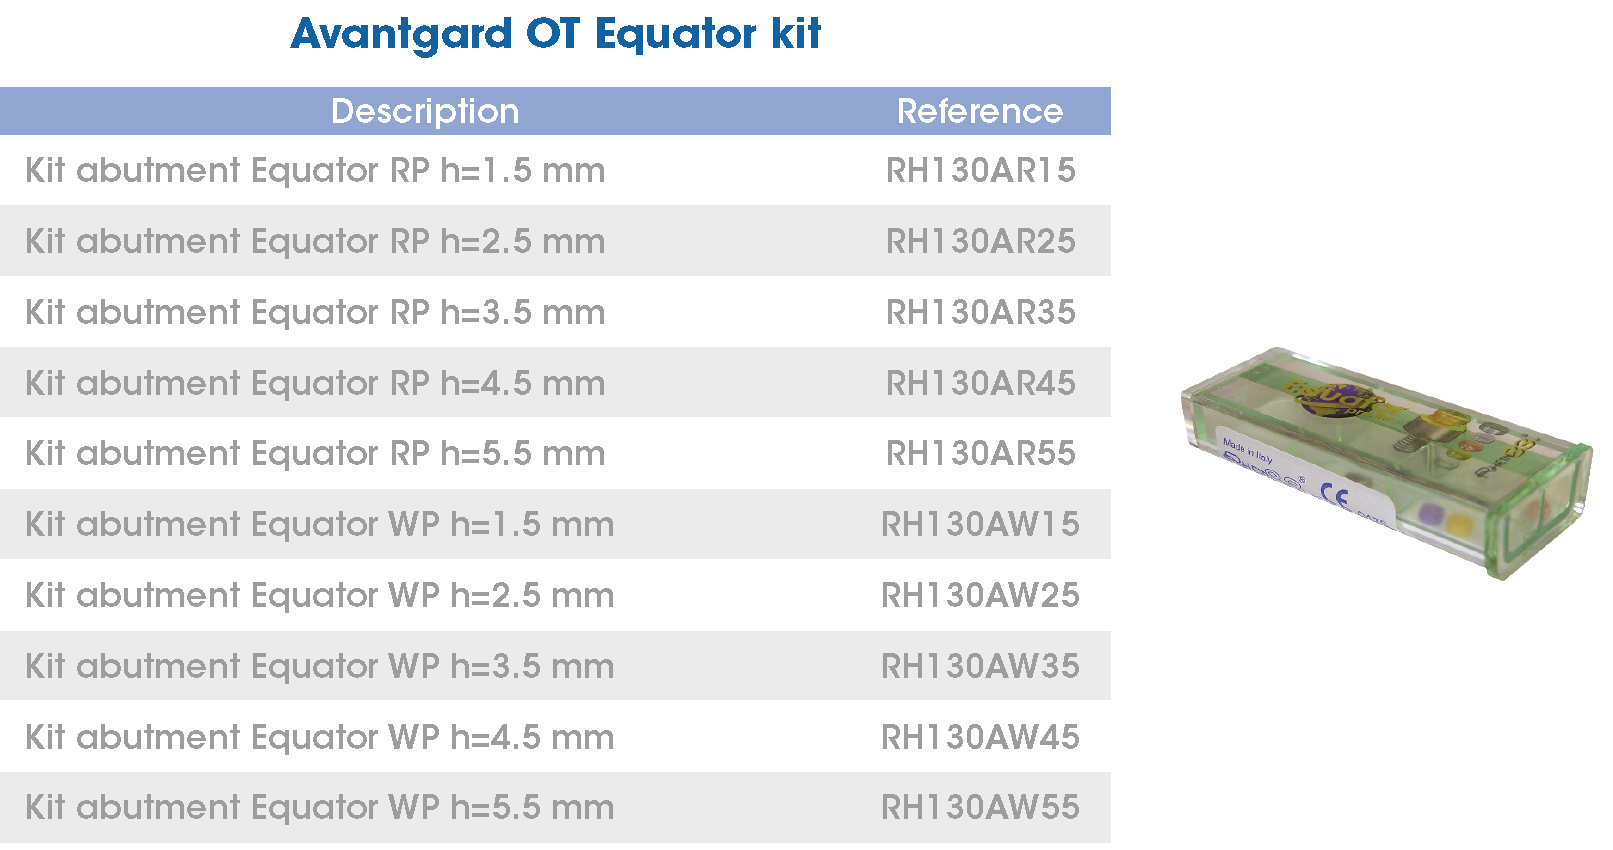 Avantgard OT Equator kit